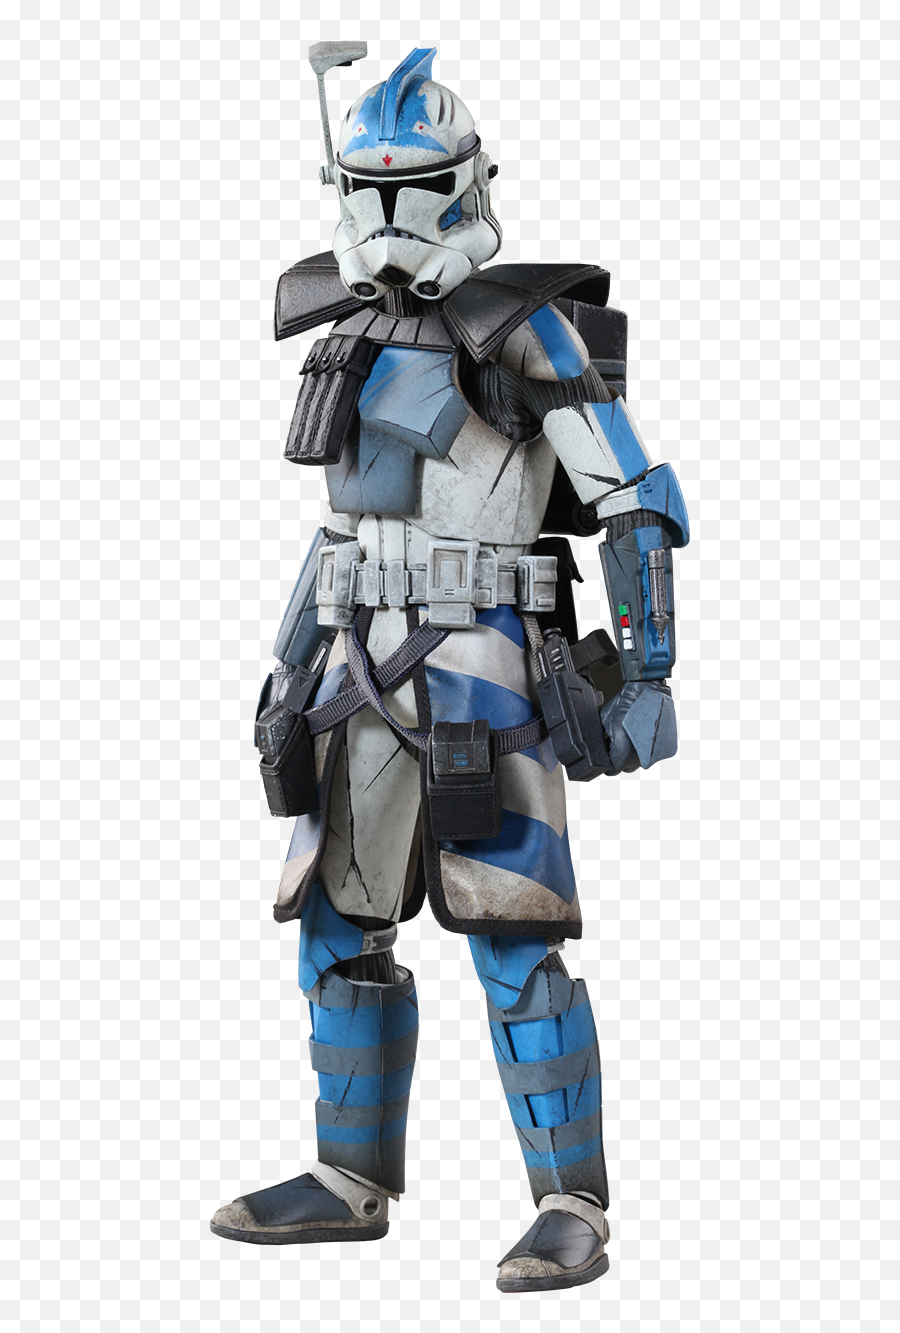 Download Hd Arc Clone Trooper - Fives Star Wars Arc Trooper Png,Clone Trooper Png